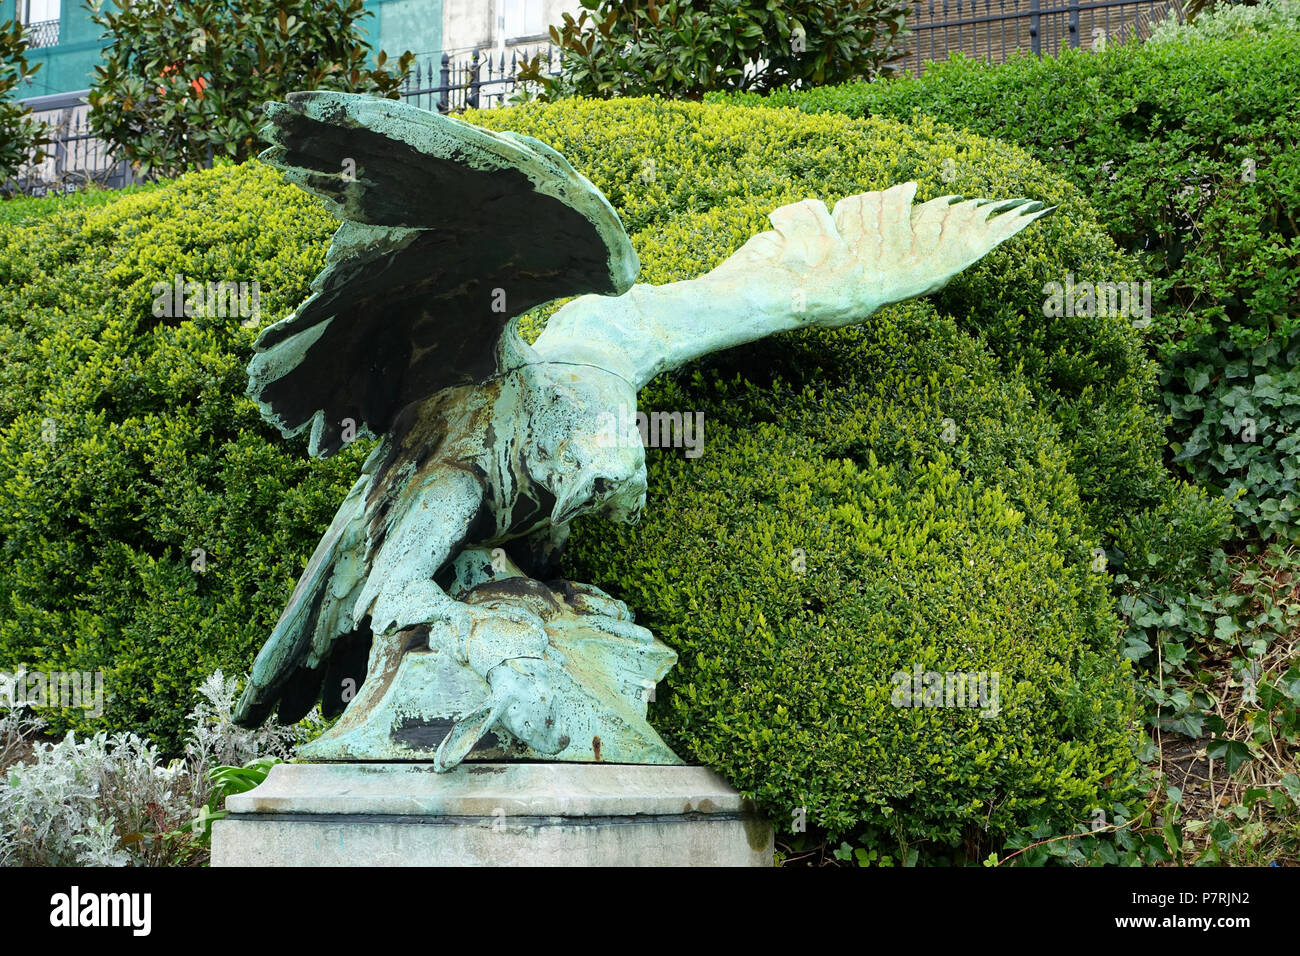 Englisch: Eagle von Henri Boncquet - Botanischer Garten von Brüssel - Brüssel, Belgien. Diese Arbeit ist in der Weil der Bildhauer vor mehr als 70 Jahren starb. 16 April 2016, 08:51:08 140 Eagle von Henri Boncquet - Botanischer Garten von Brüssel - Brüssel, Belgien - DSC 06758 Stockfoto